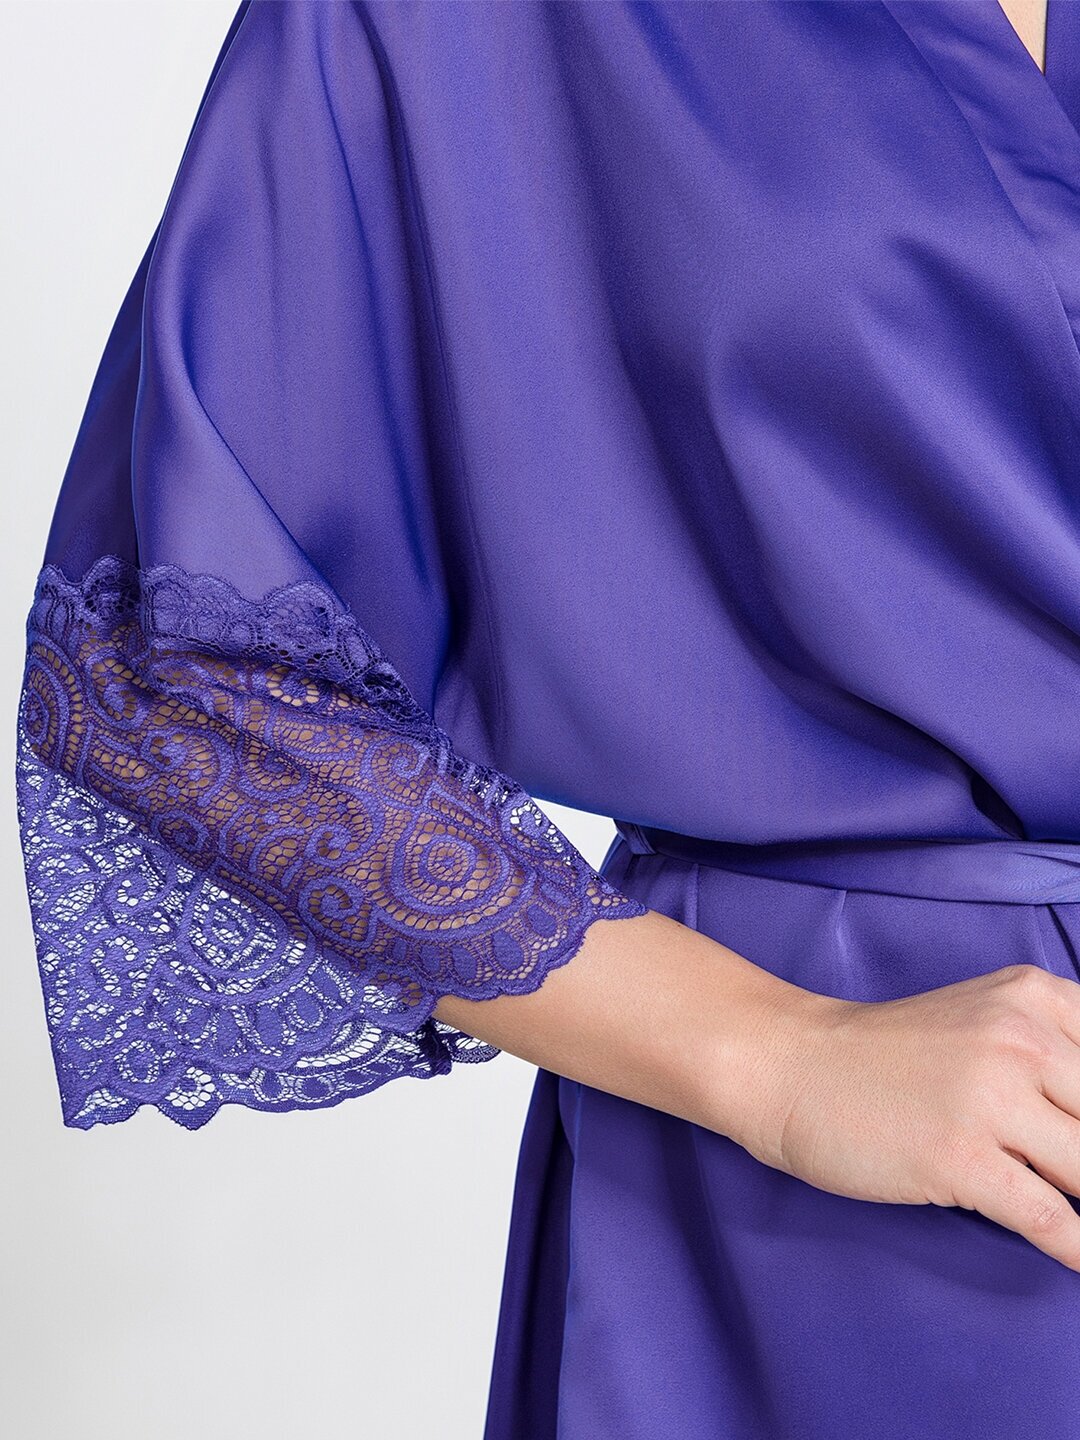 Шелковый халат женский HappyFox, HFSL2529 размер 52, цвет синий - фотография № 6